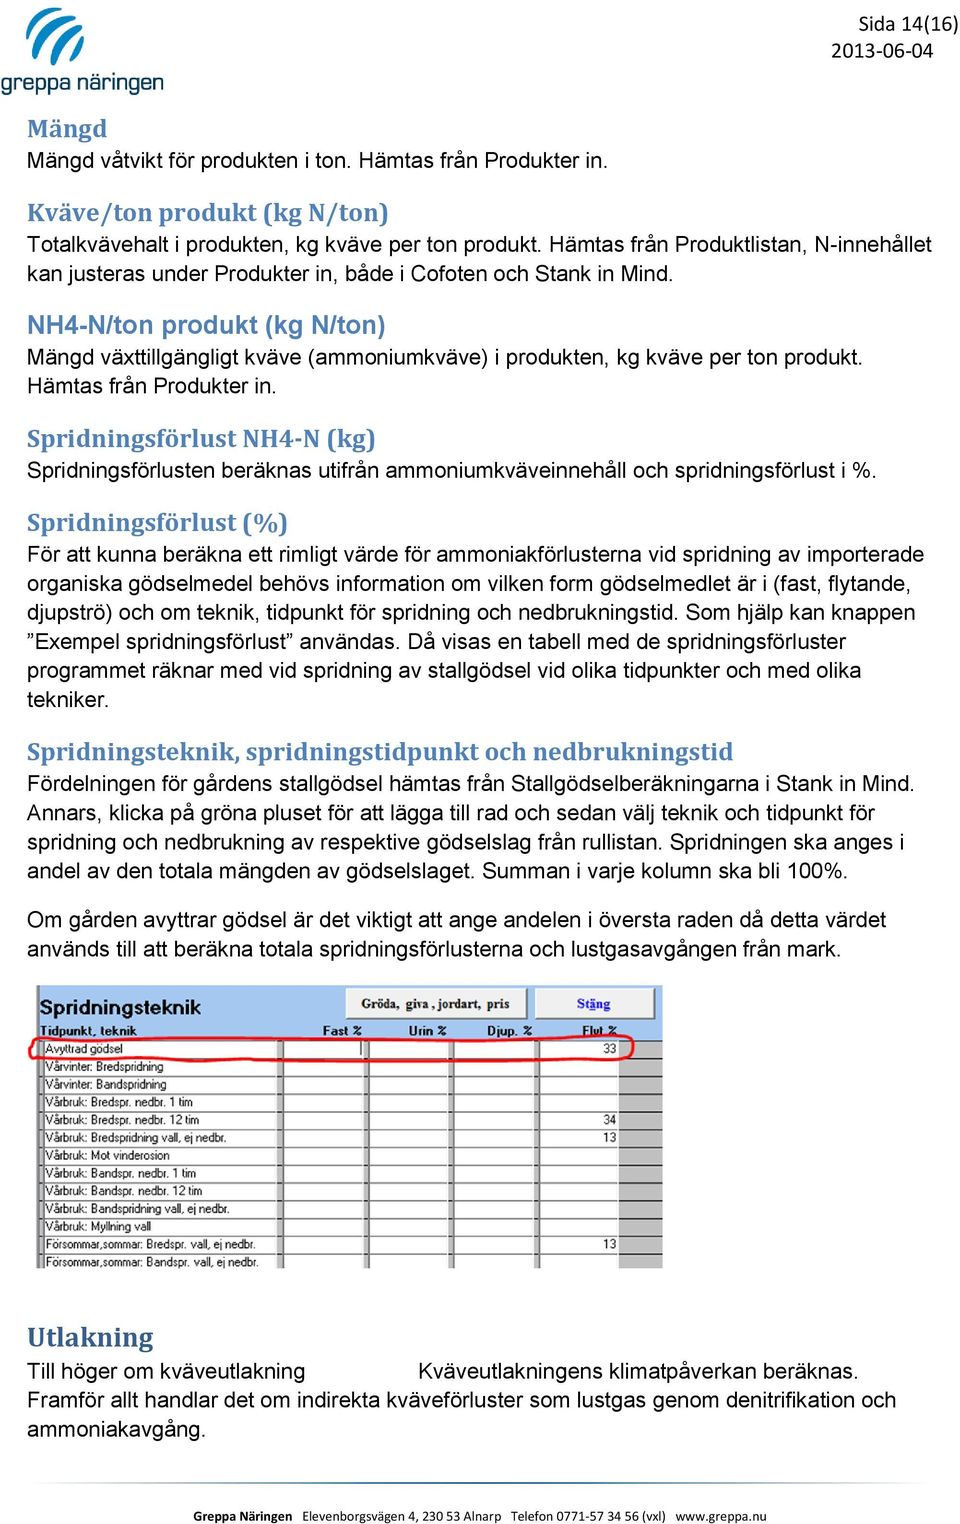 NH4-N/ton produkt (kg N/ton) Mängd växttillgängligt kväve (ammoniumkväve) i produkten, kg kväve per ton produkt. Hämtas från Produkter in.